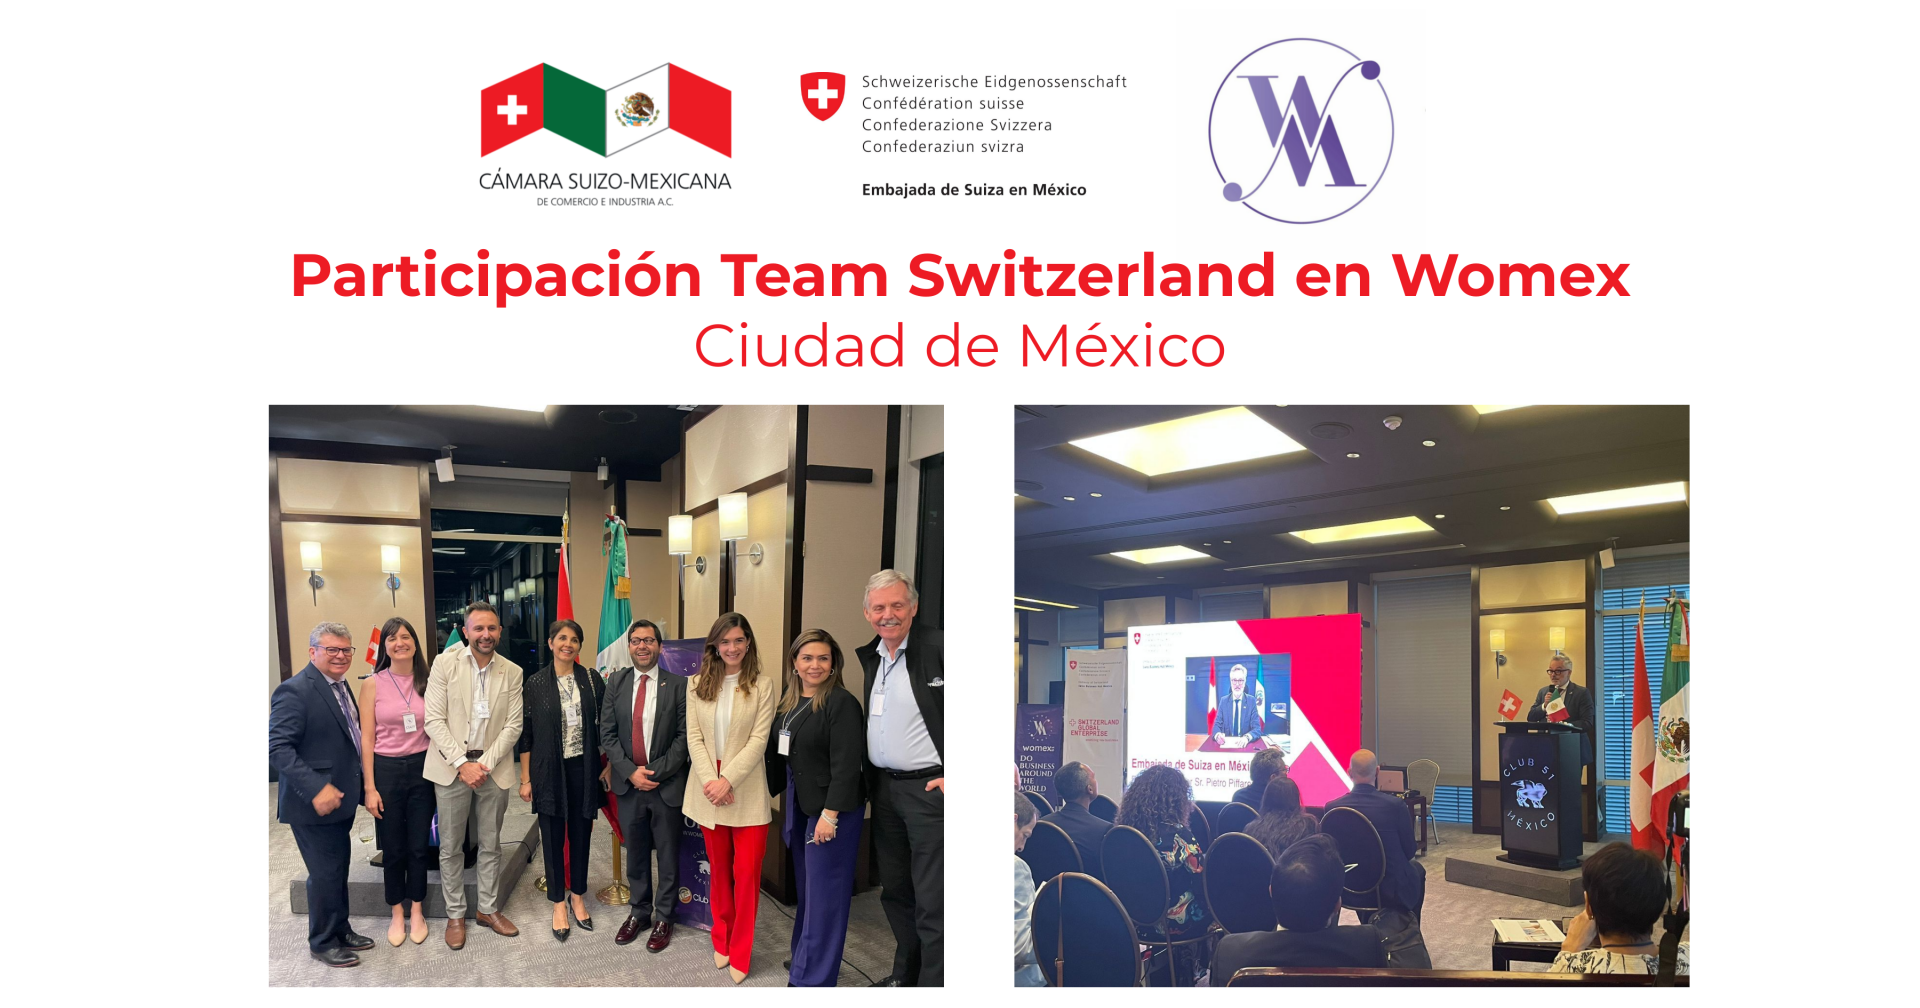 Participation of Team Switzerland in Womex 51